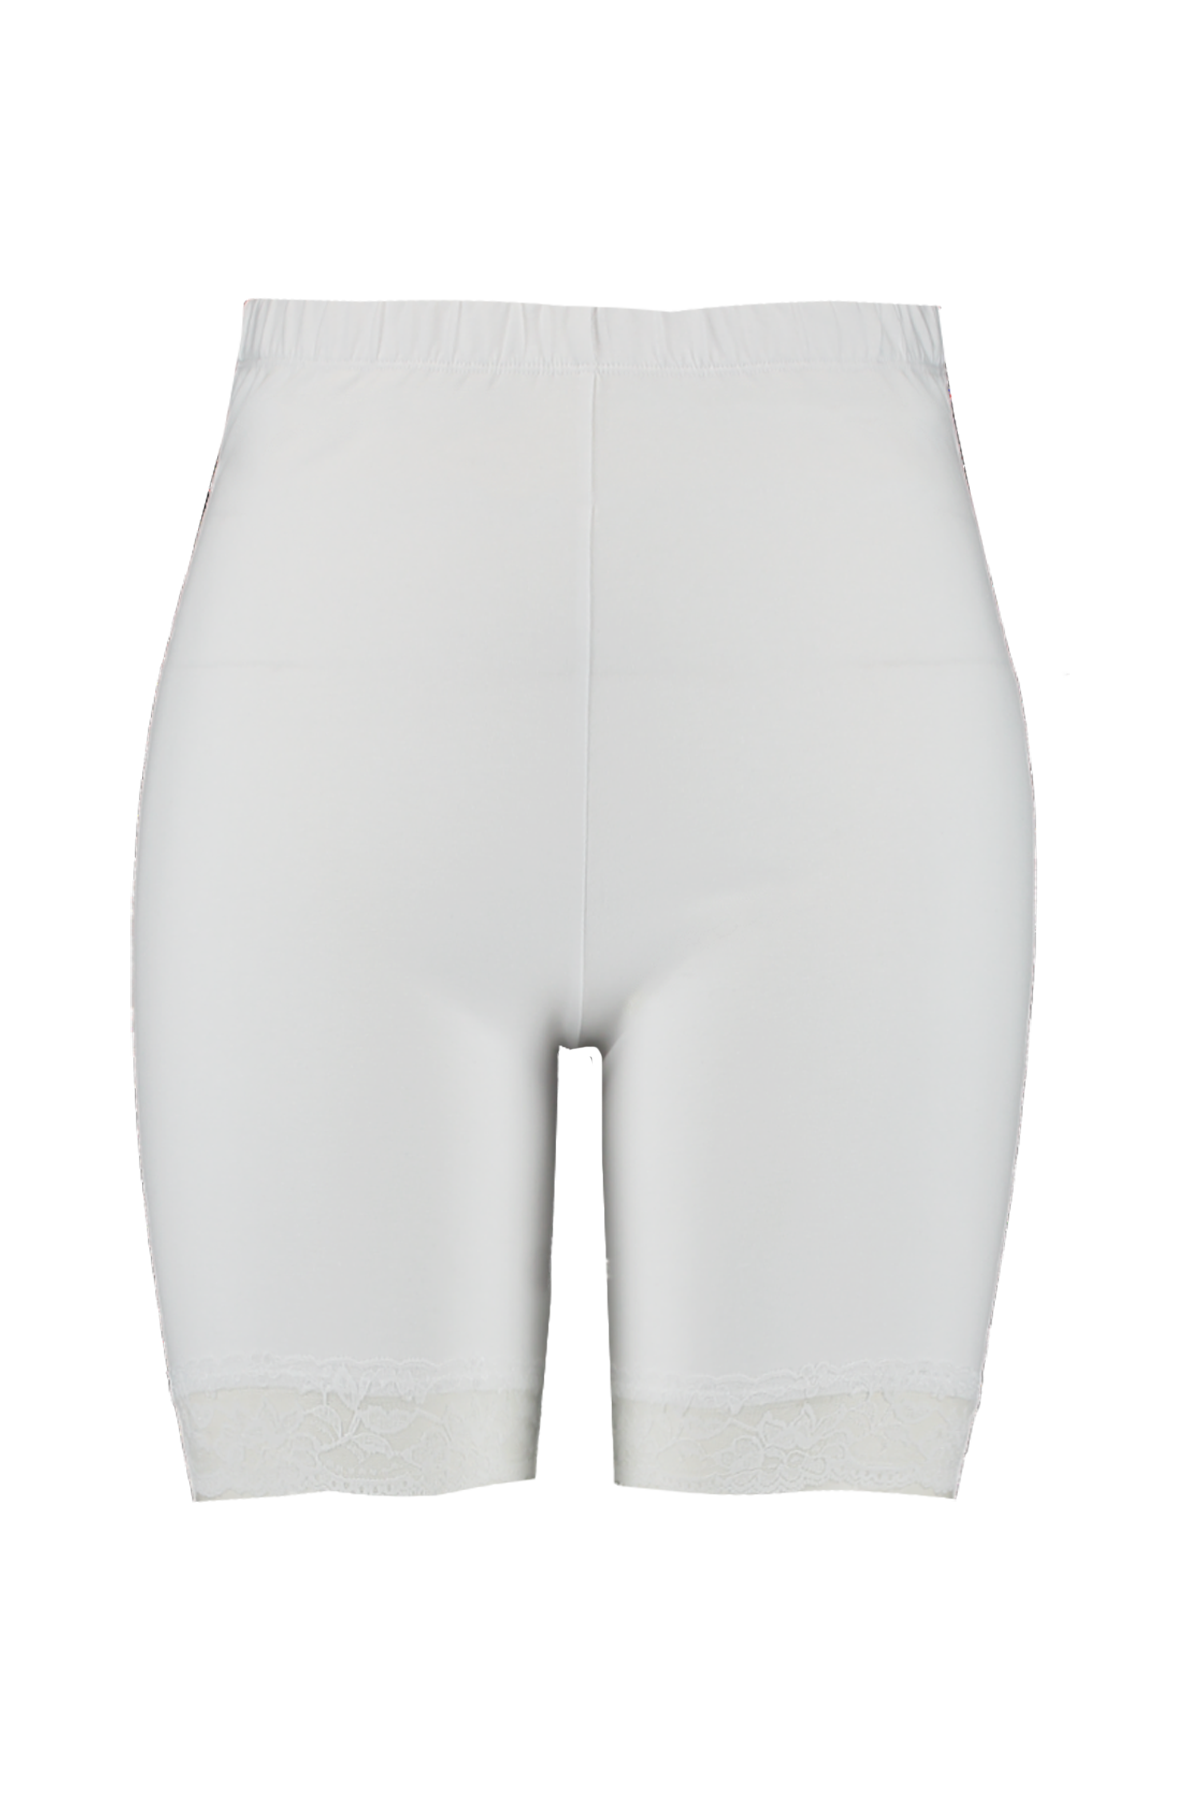 Fondsen mode Geweldig Dames Korte legging met kant Wit bij MS Mode®